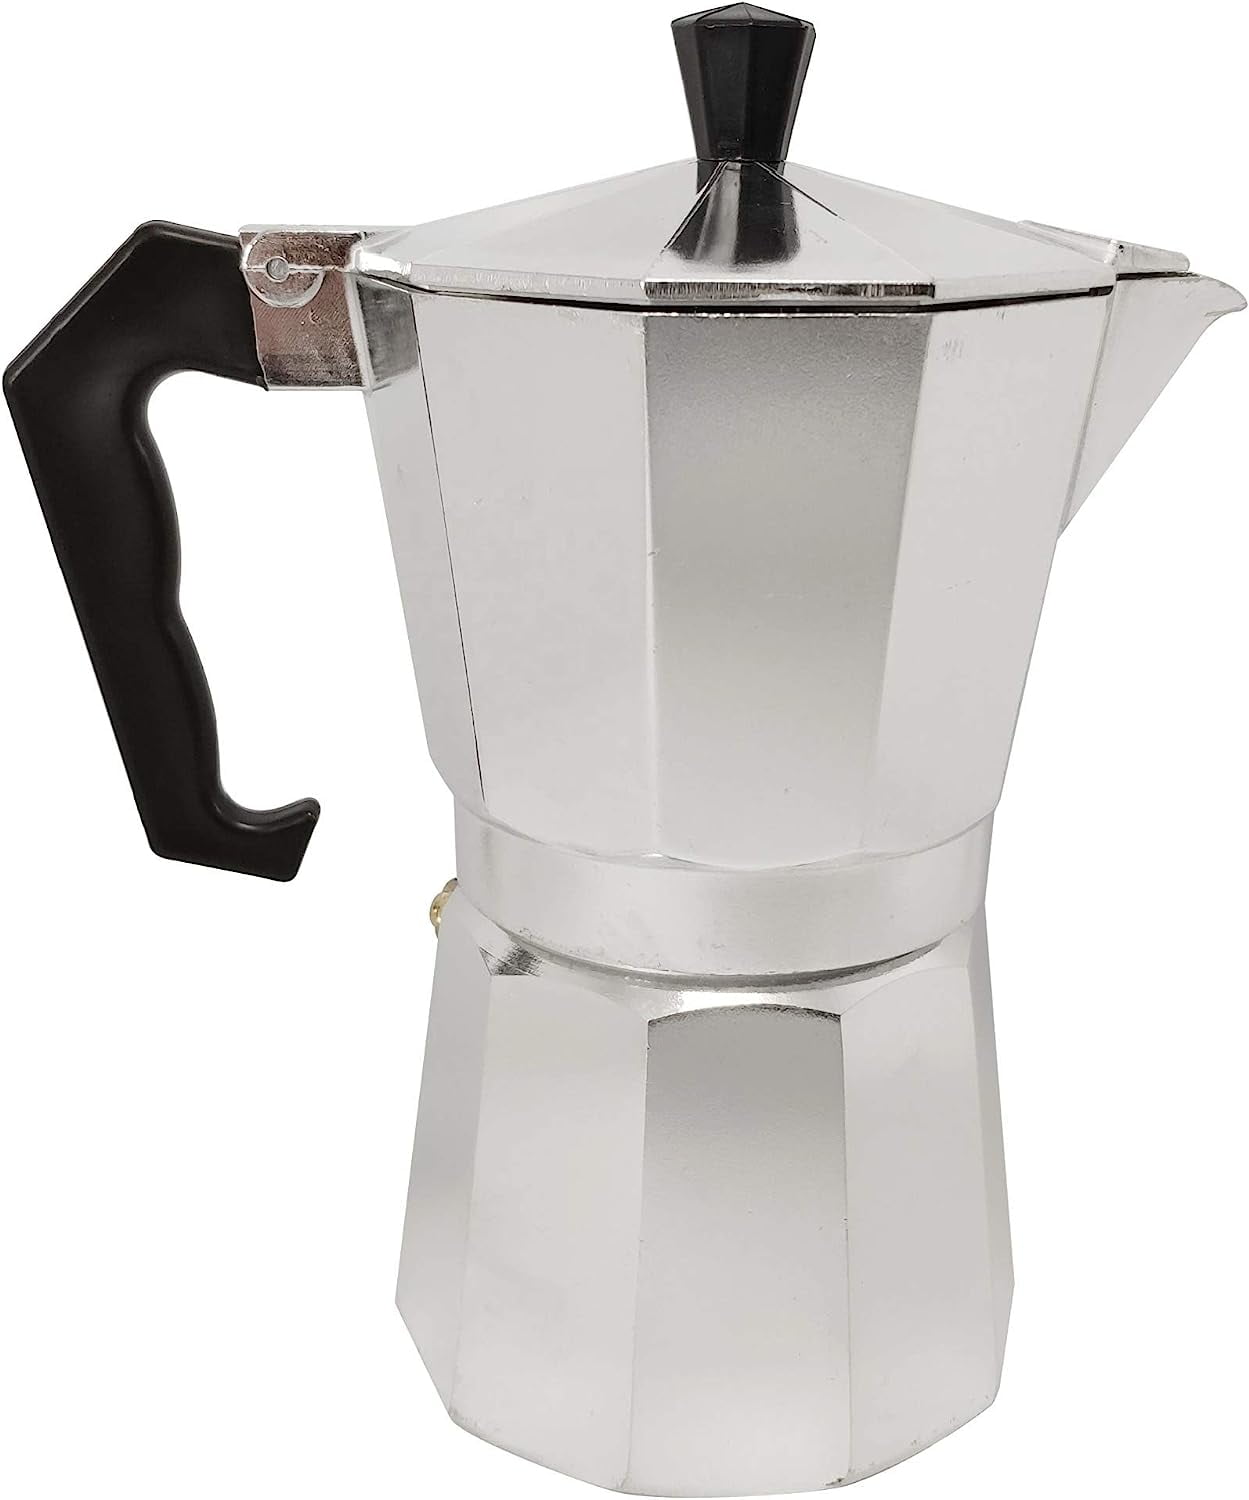  Primula Classic Stovetop Espresso and Coffee Maker, Moka Pot  for Italian and Cuban Café Brewing, Greca Coffee Maker, Cafeteras, 3  Espresso Cups, Silver: Stovetop Espresso Pots: Home & Kitchen